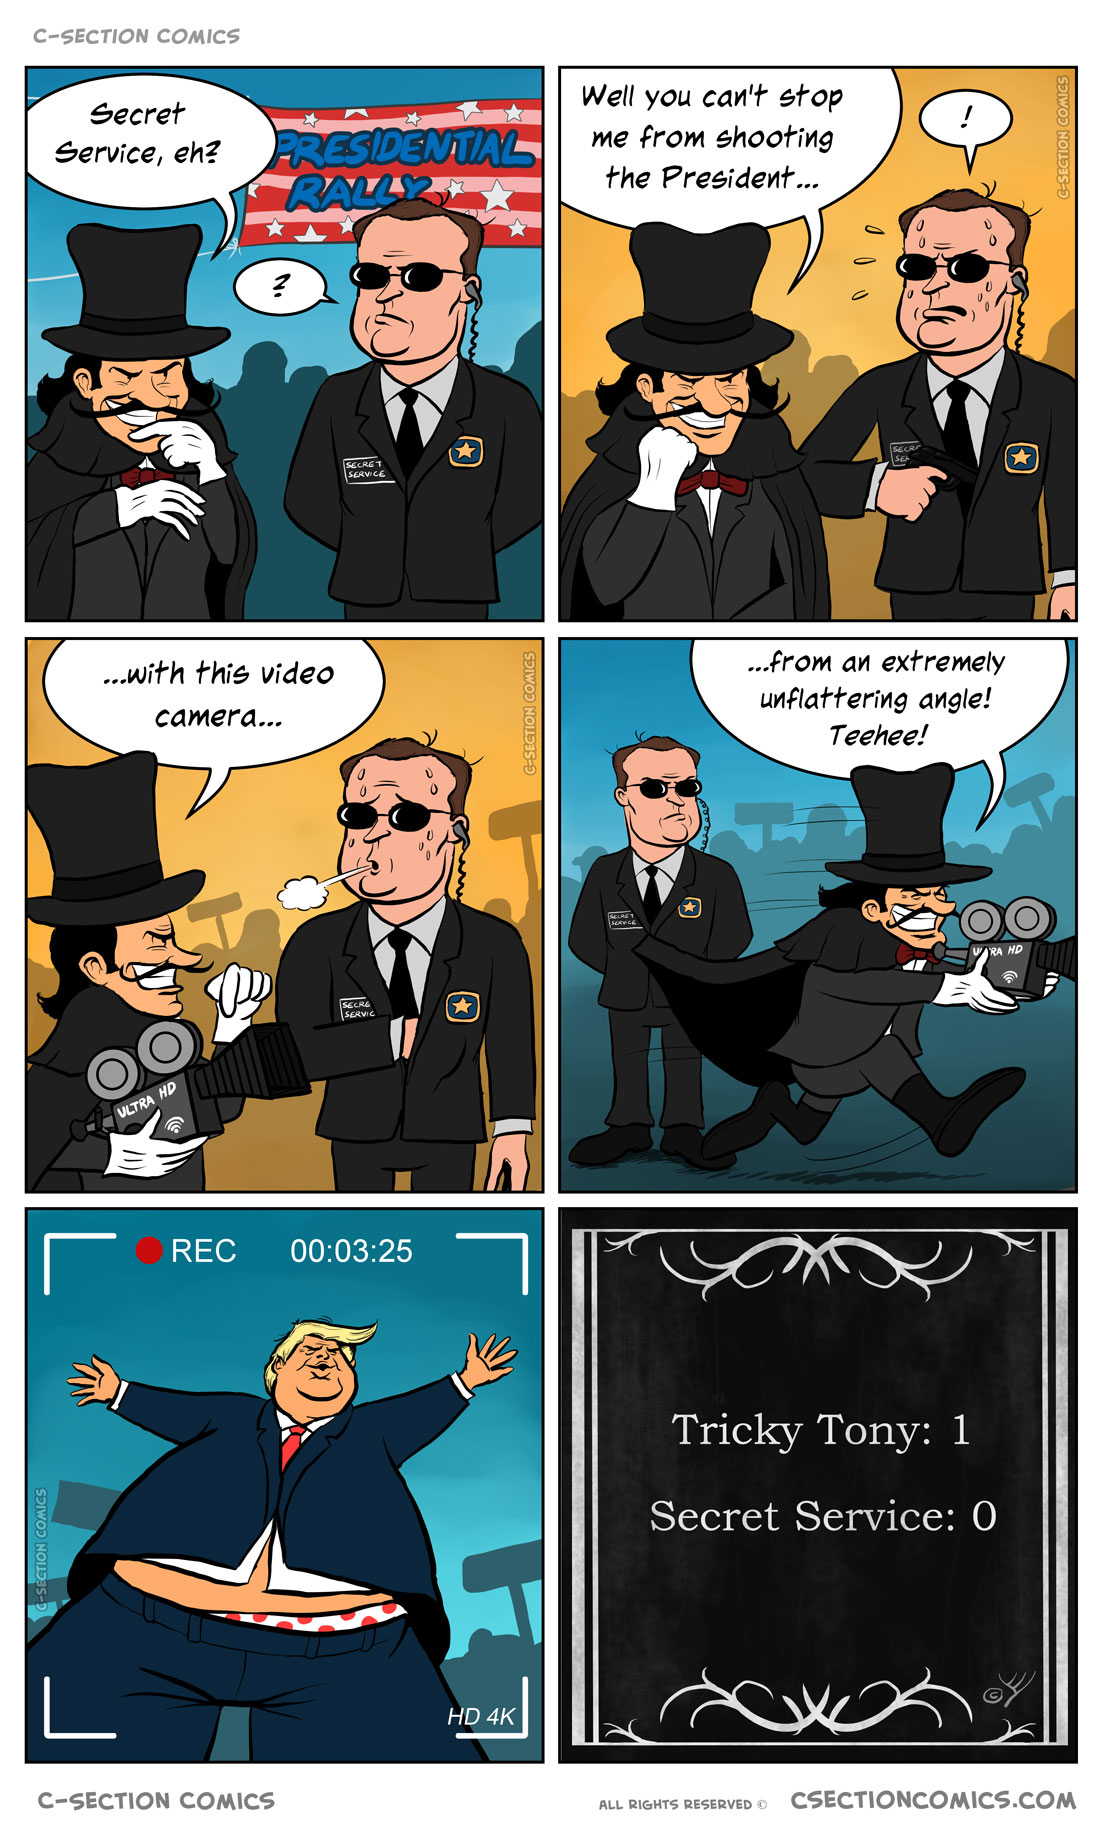 Tricky Tony vs. the Secret Service